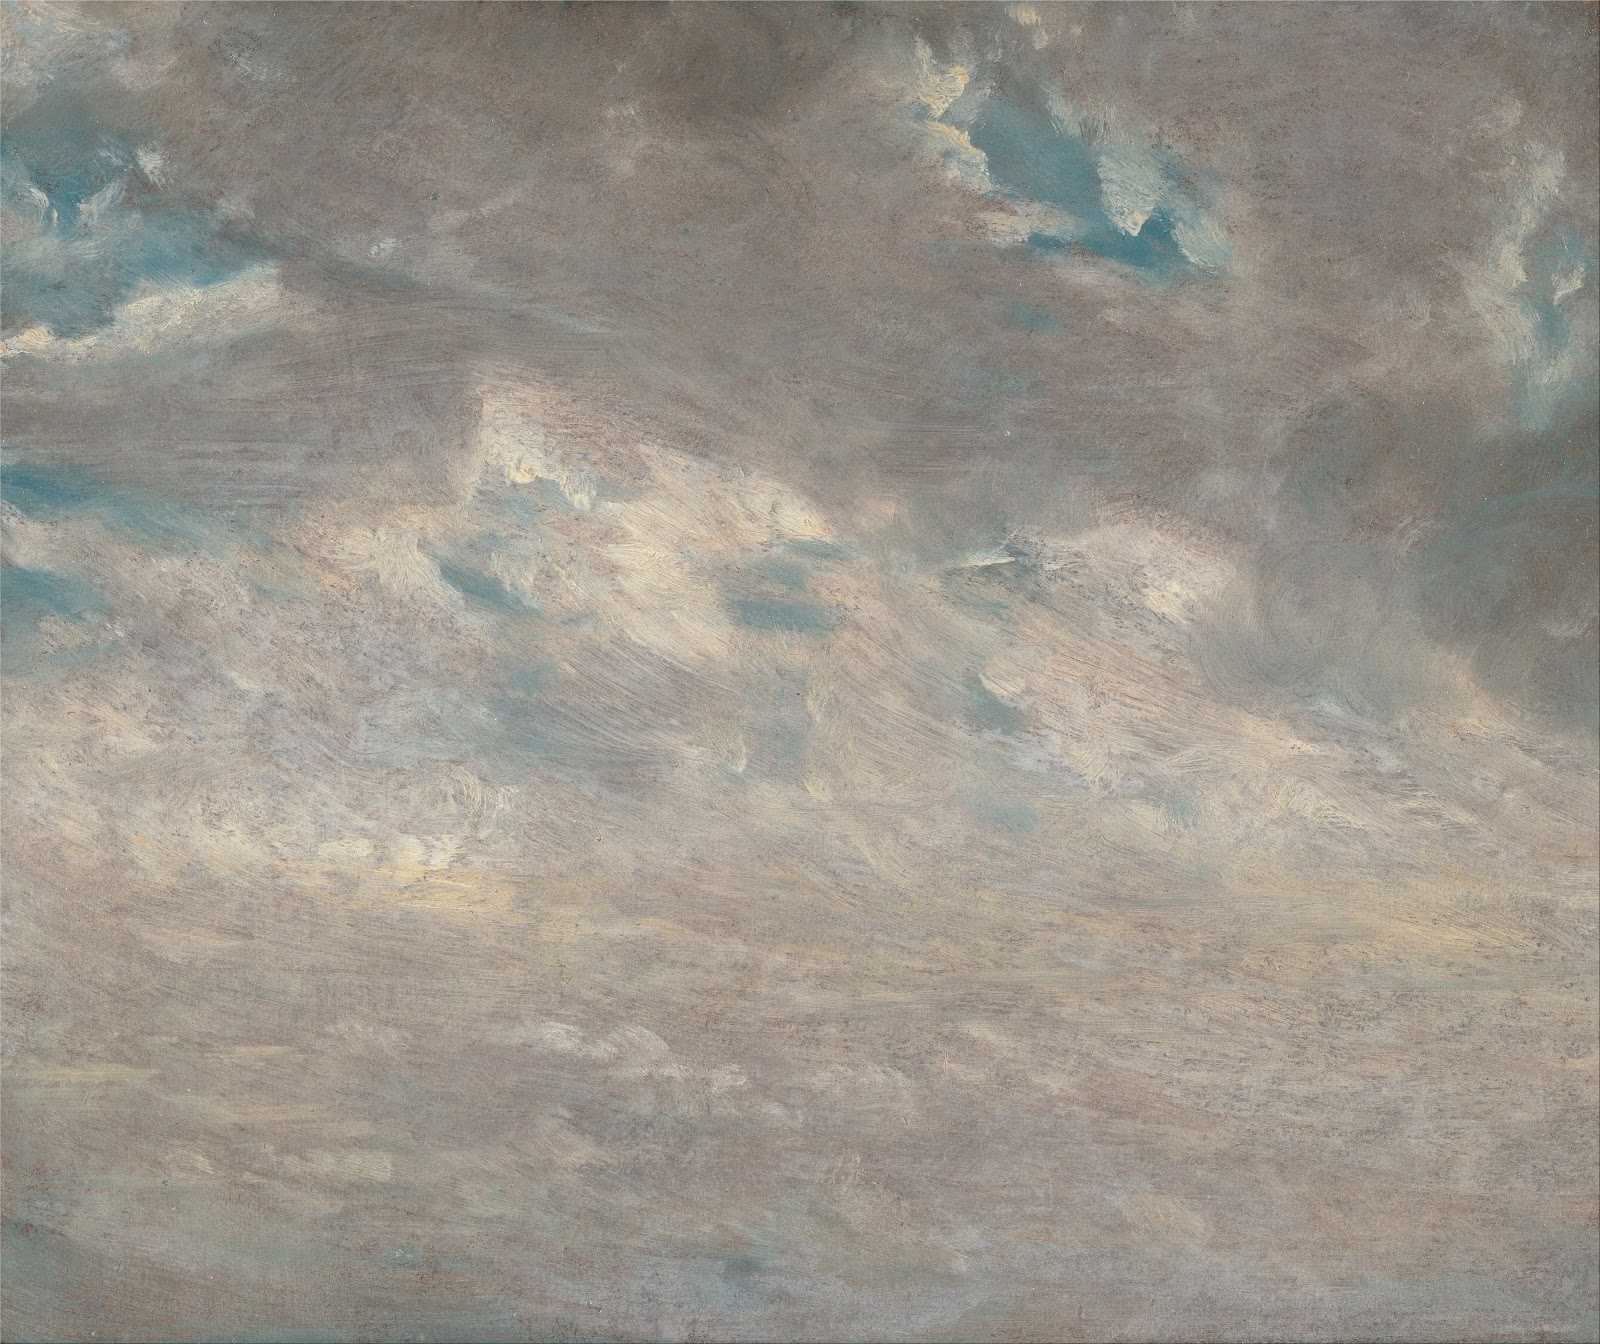 John+Constable-1776-1837 (43).jpg